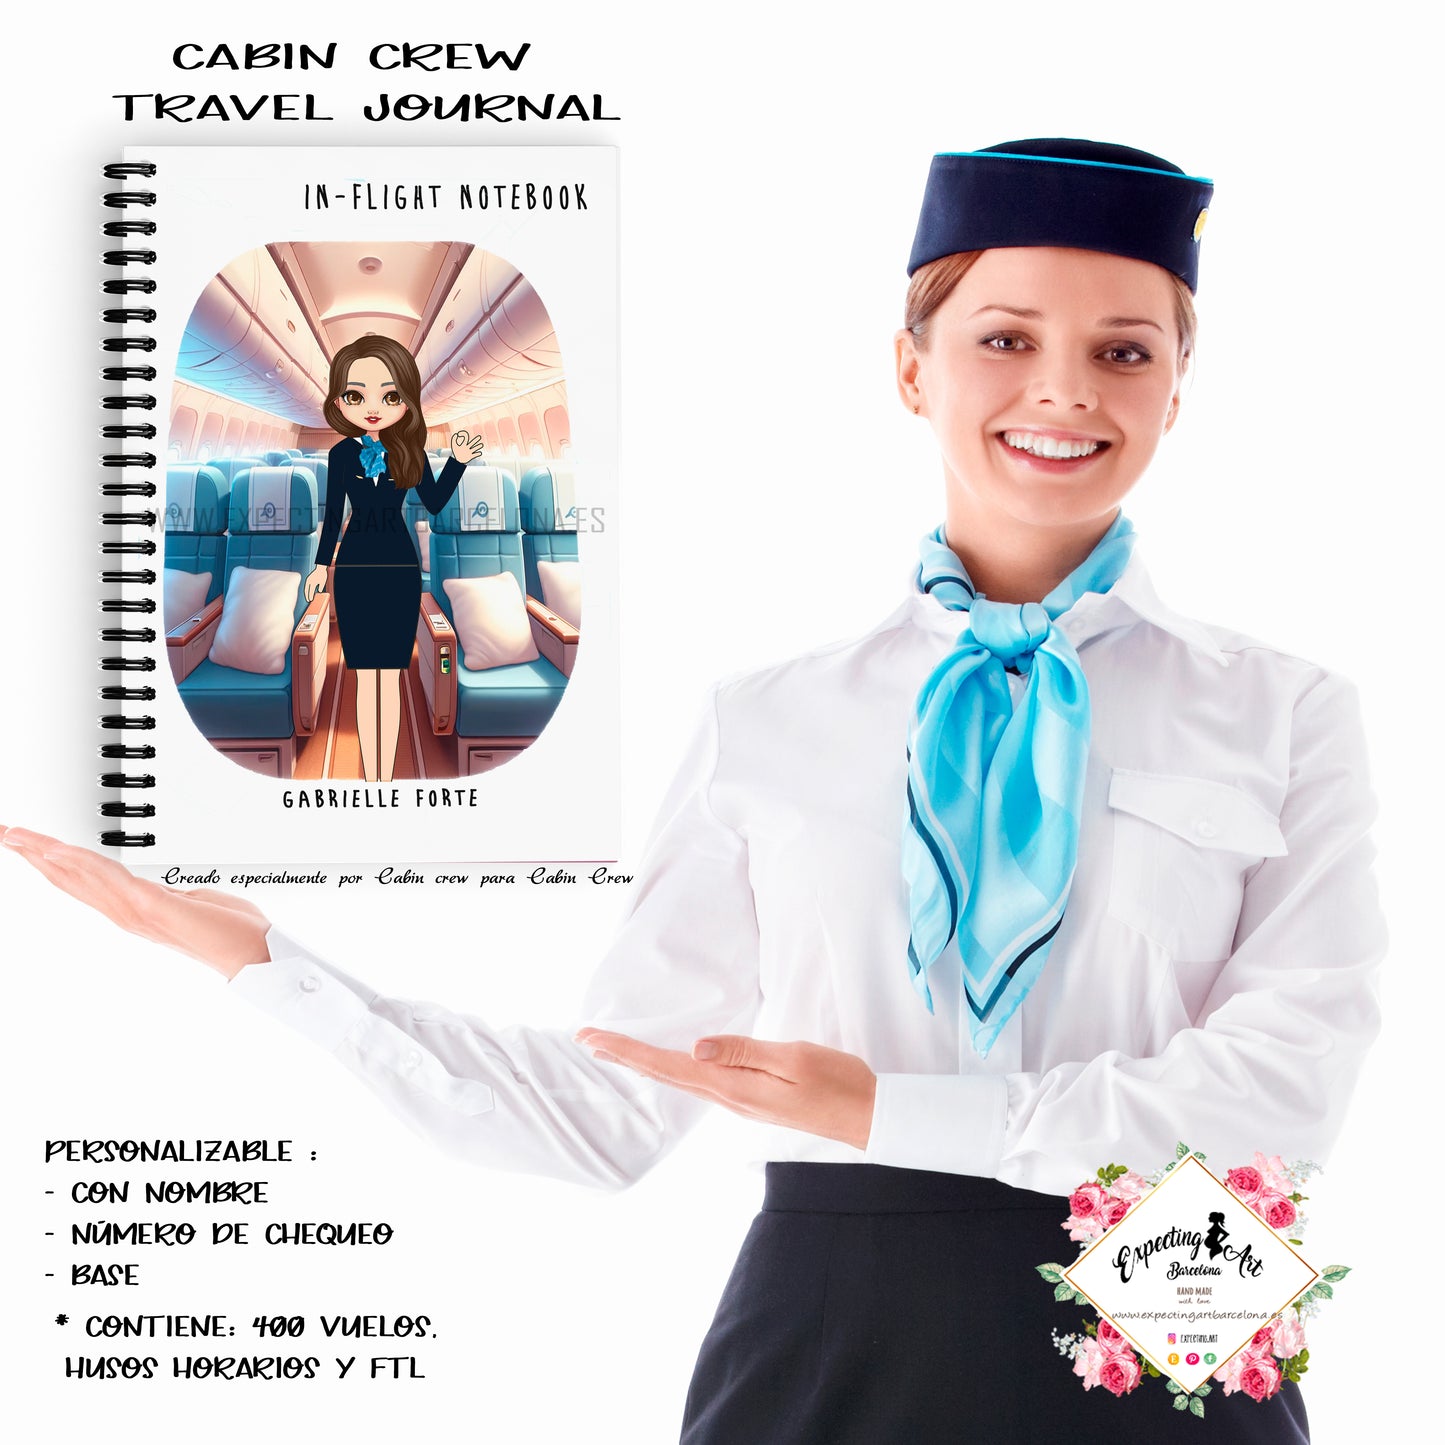 Agenda de vuelo para cabin crew personalizable. Modelo " Pasillo avión".